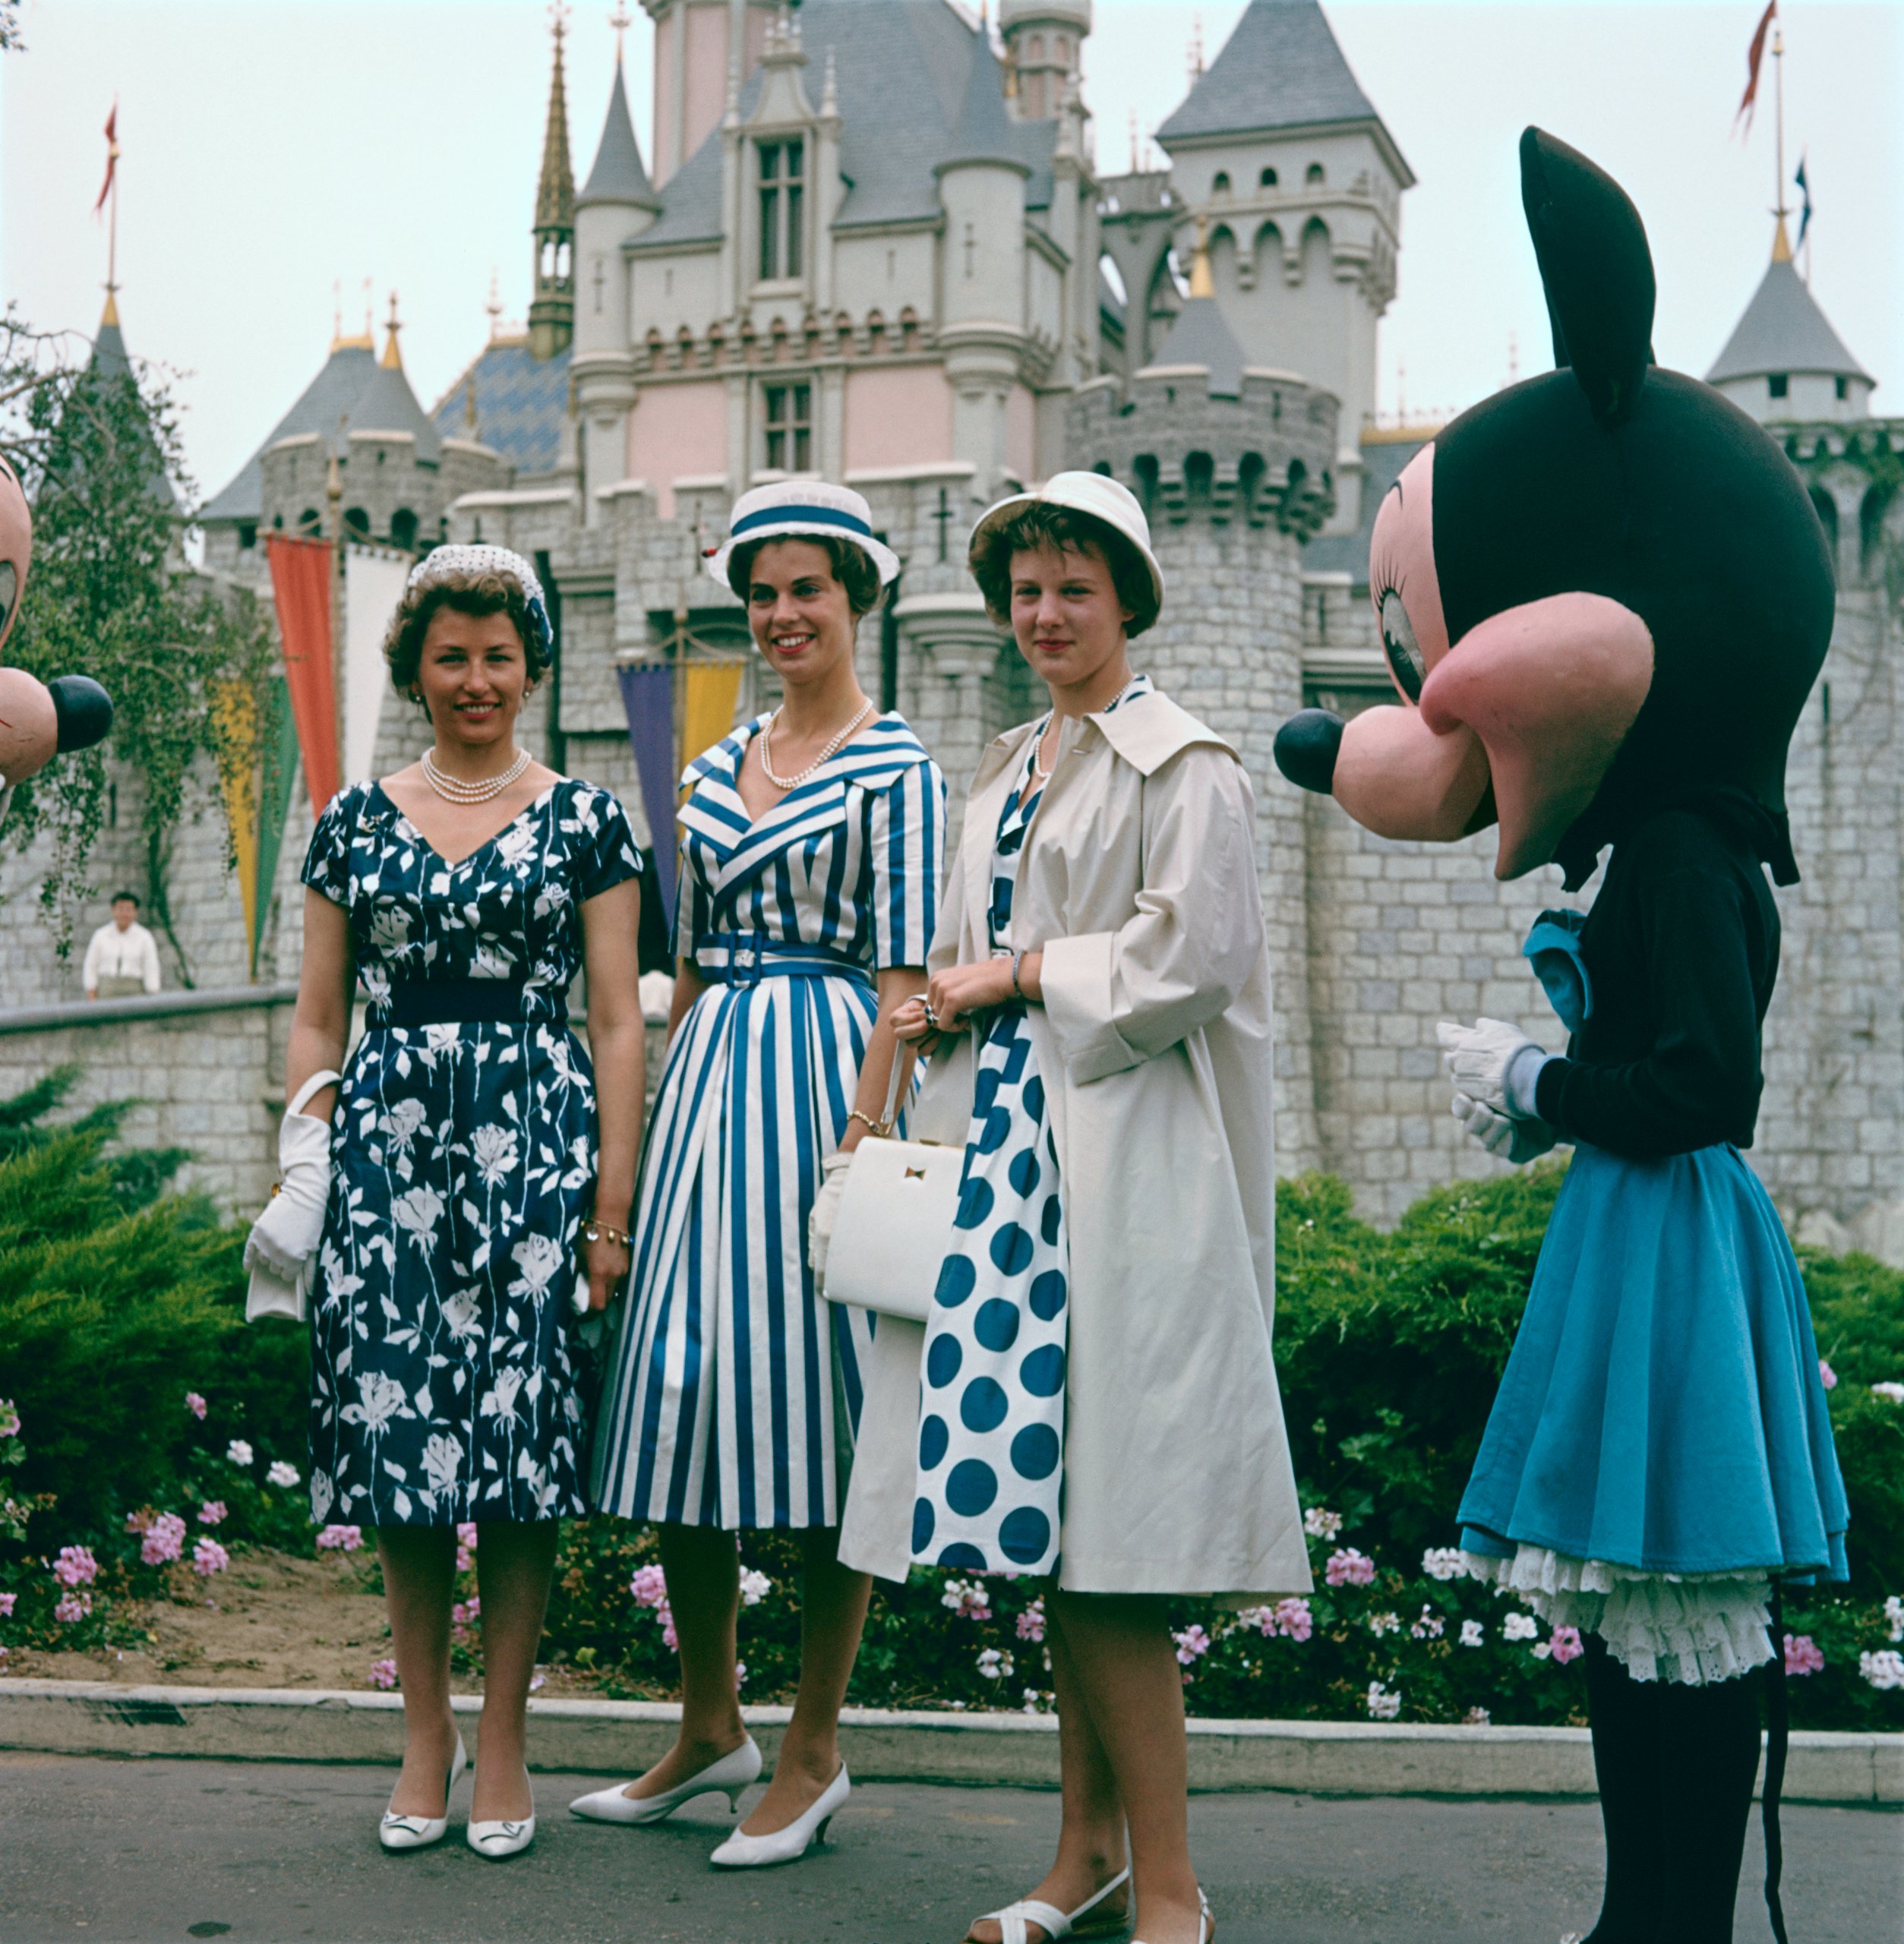 The Scandinavian Princesses at Disney Land